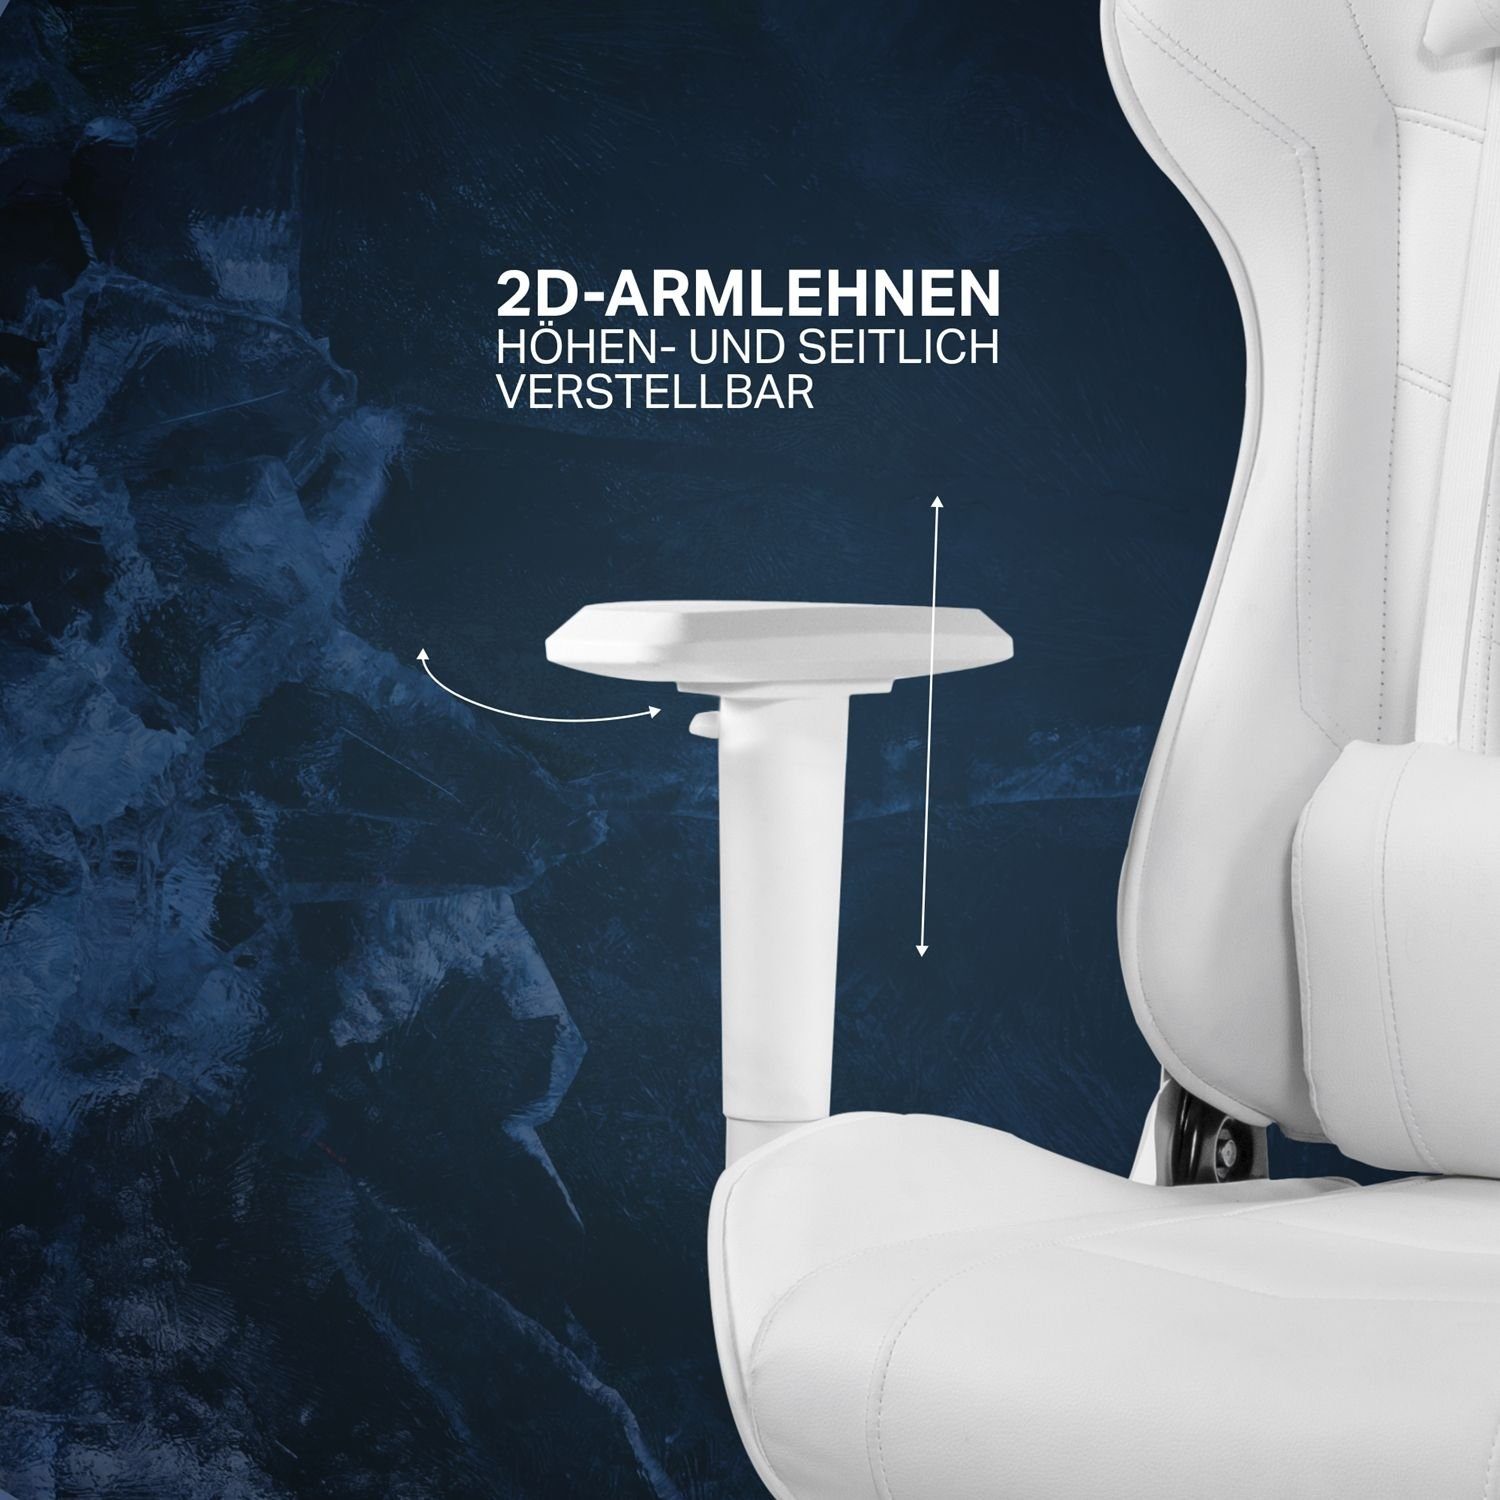 Jumbo Rückenlehne, extra 5 Gaming-Stuhl hohe Stuhl Gamer Stuhl weiß, Herstellergarantie Gaming groß, DELTACO Jahre inkl. 110kg Kissen (kein Set),